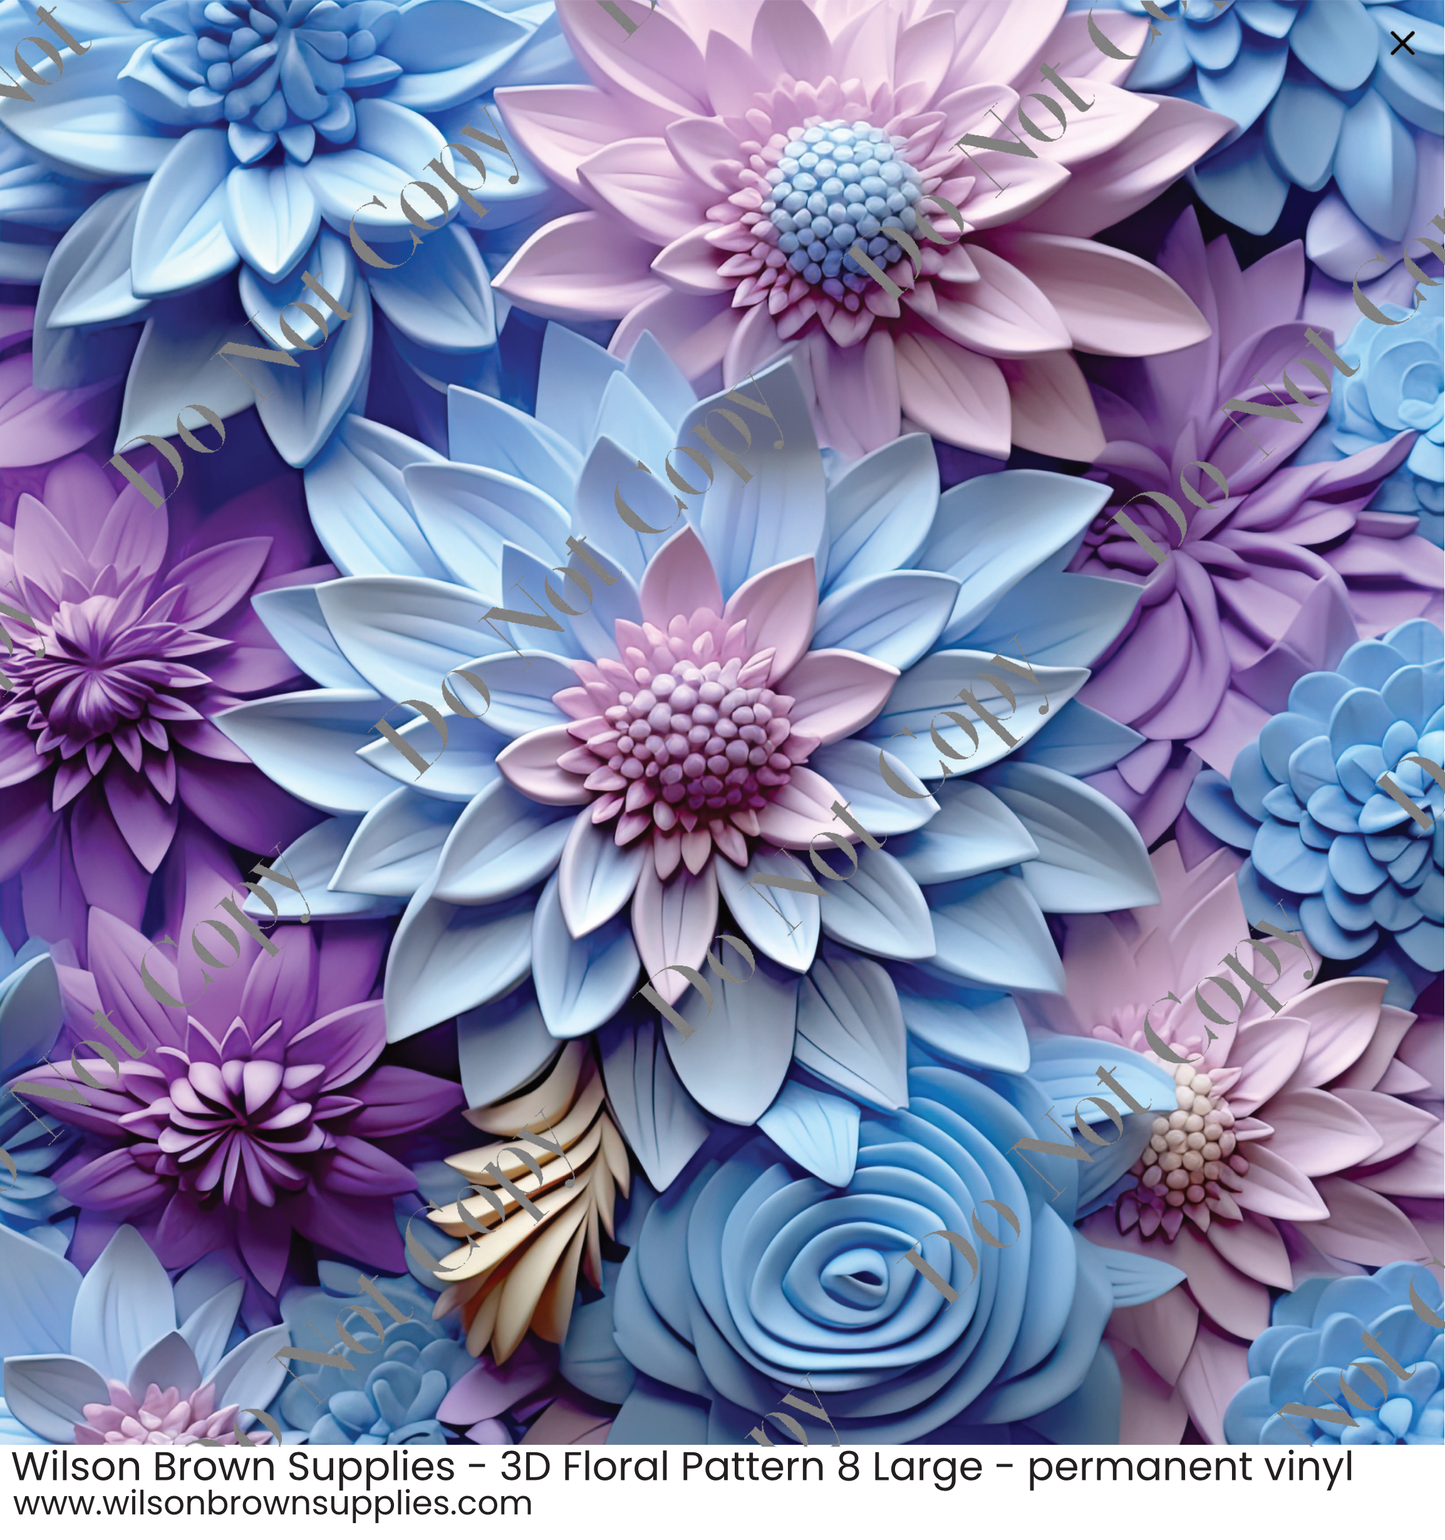 Patterned Vinyl - 3D Floral Pattern 8